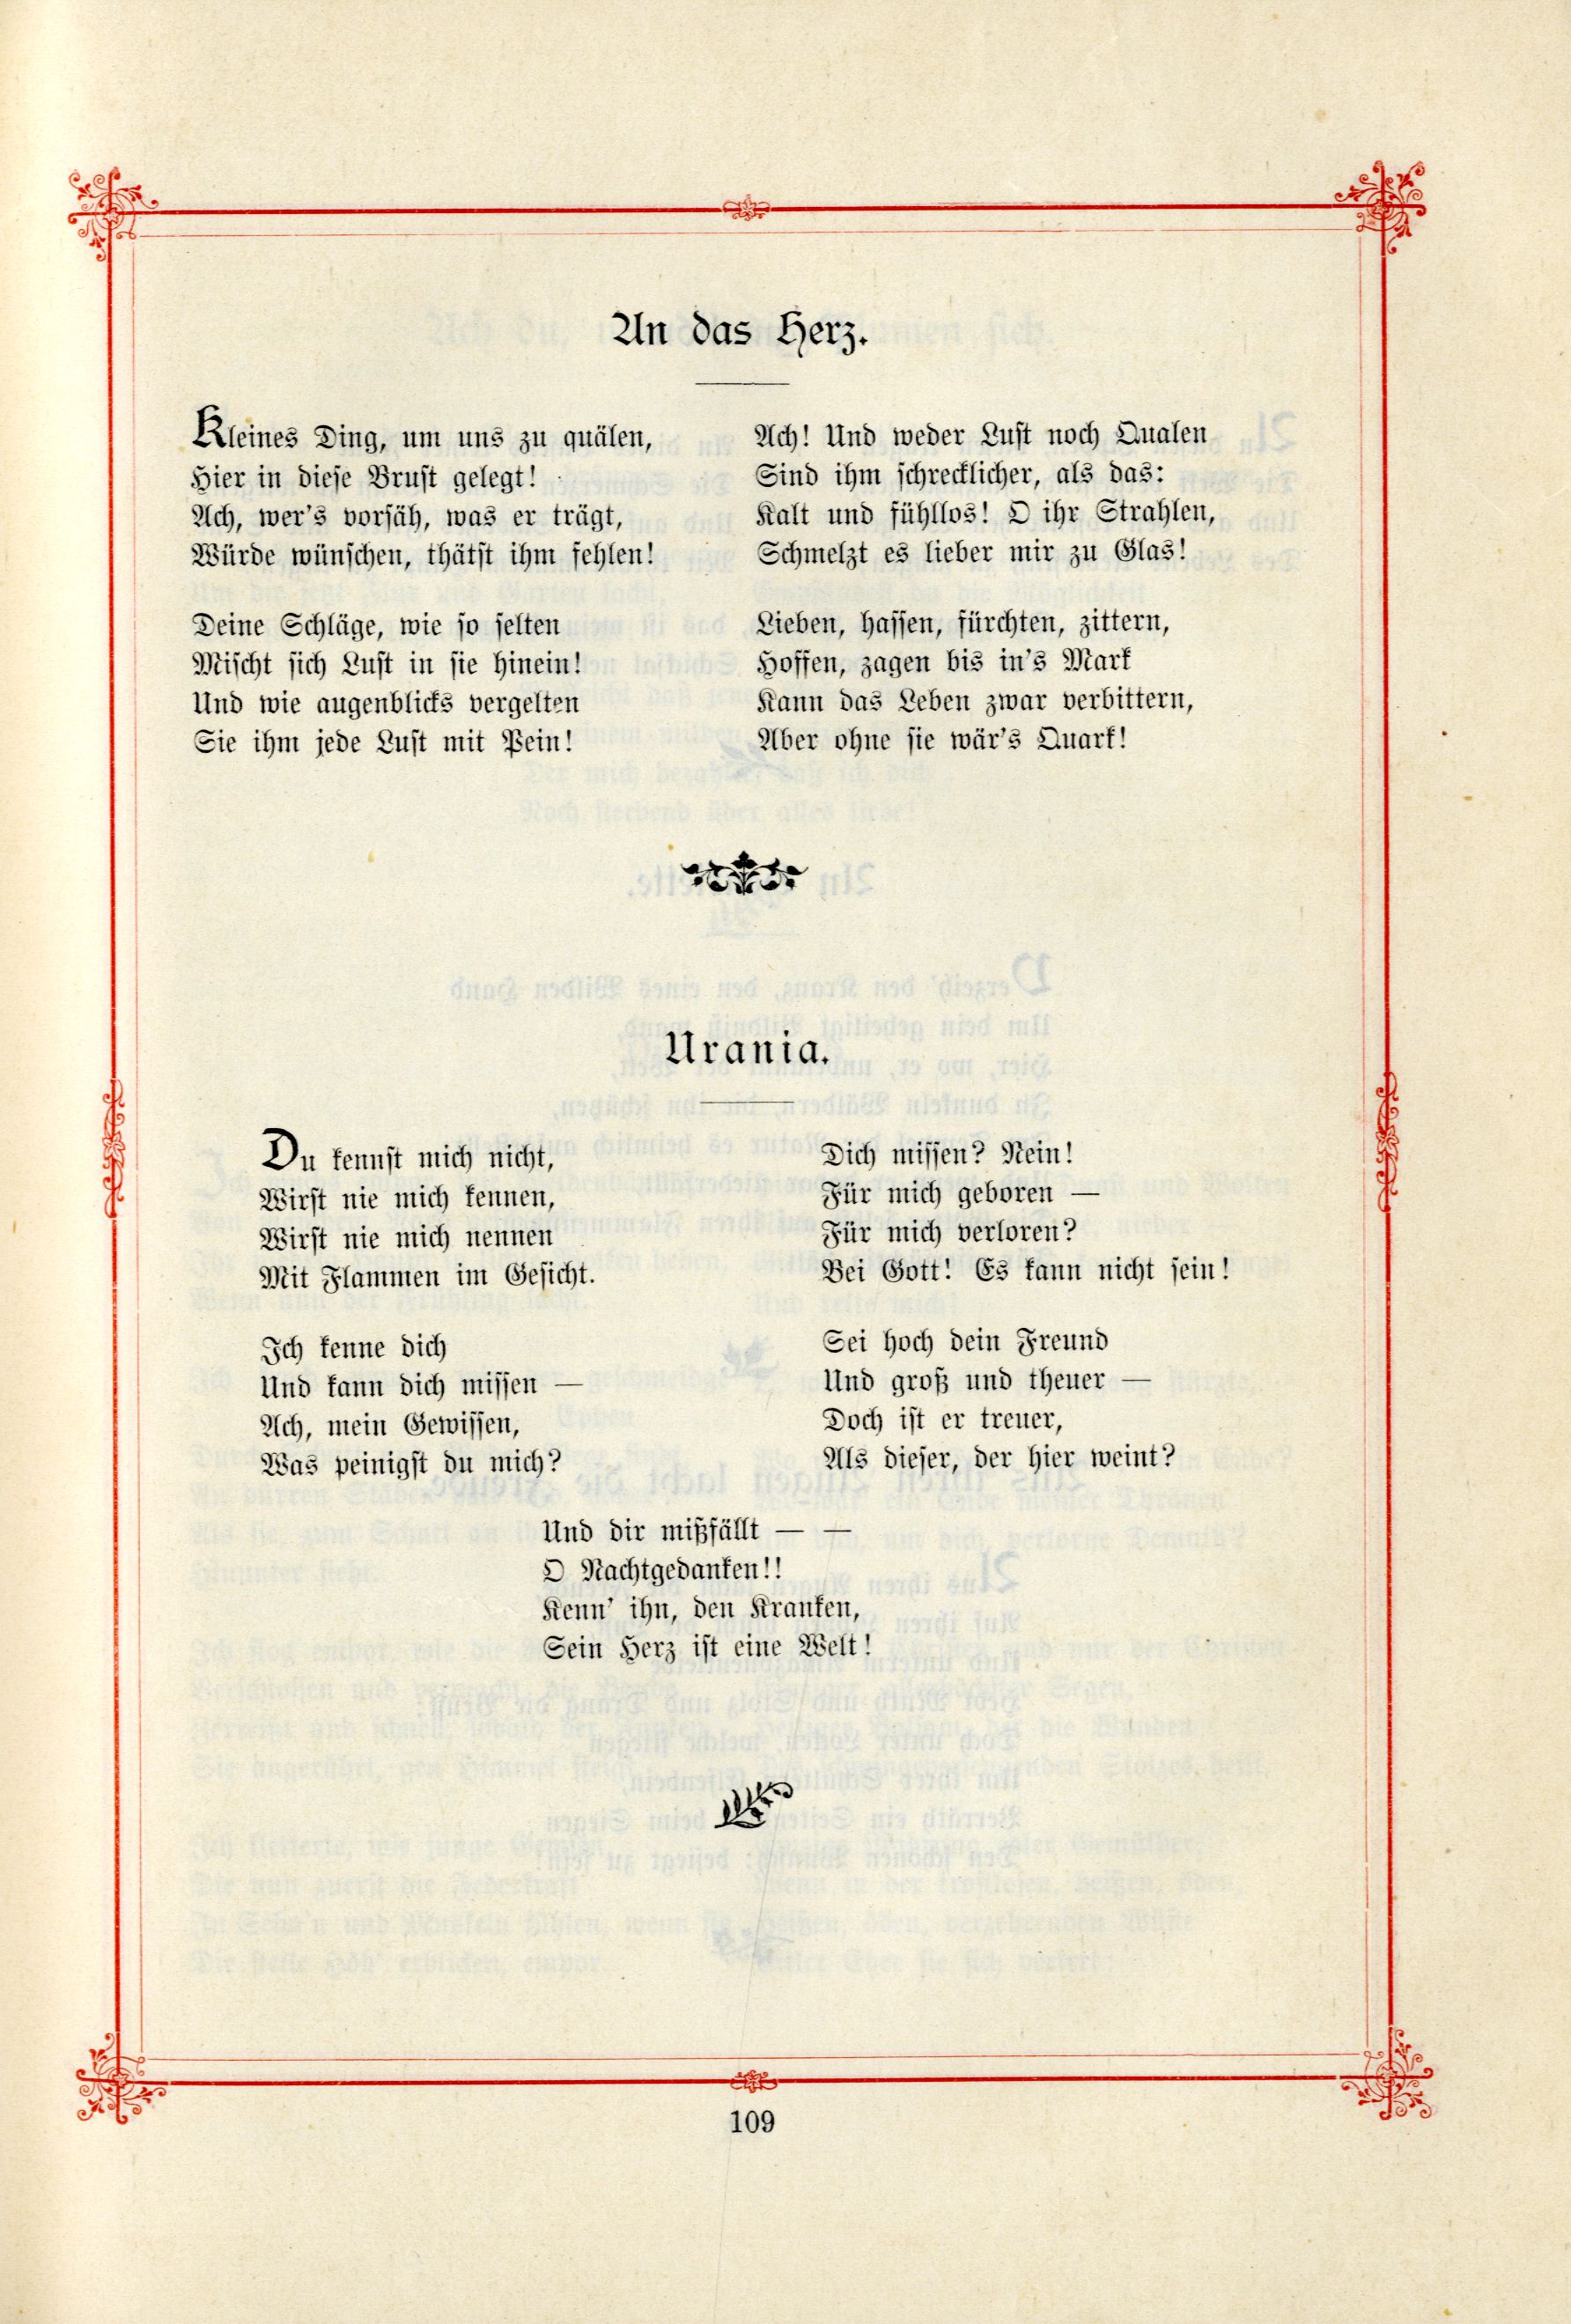 Das Baltische Dichterbuch (1895) | 155. (109) Main body of text